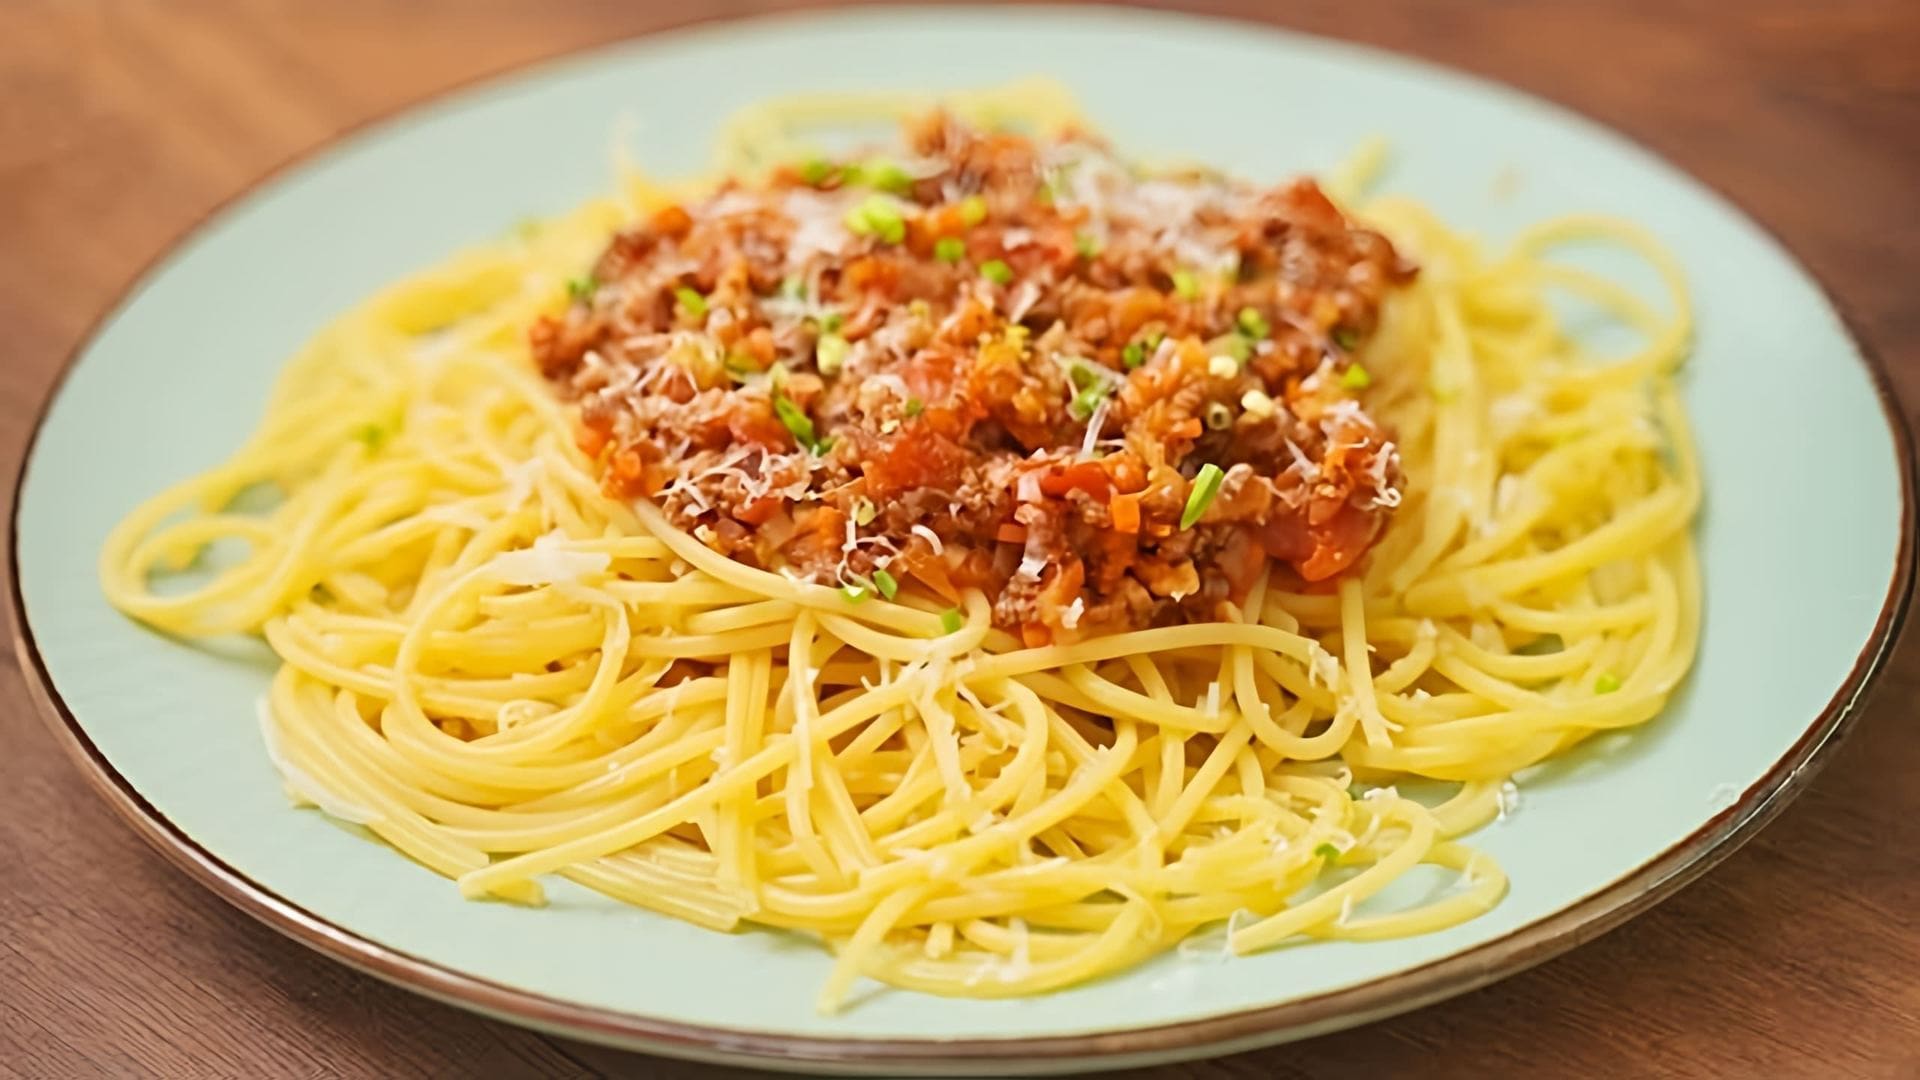 В этом видео демонстрируется рецепт приготовления спагетти Болоньезе, итальянского блюда, которое покорило весь мир